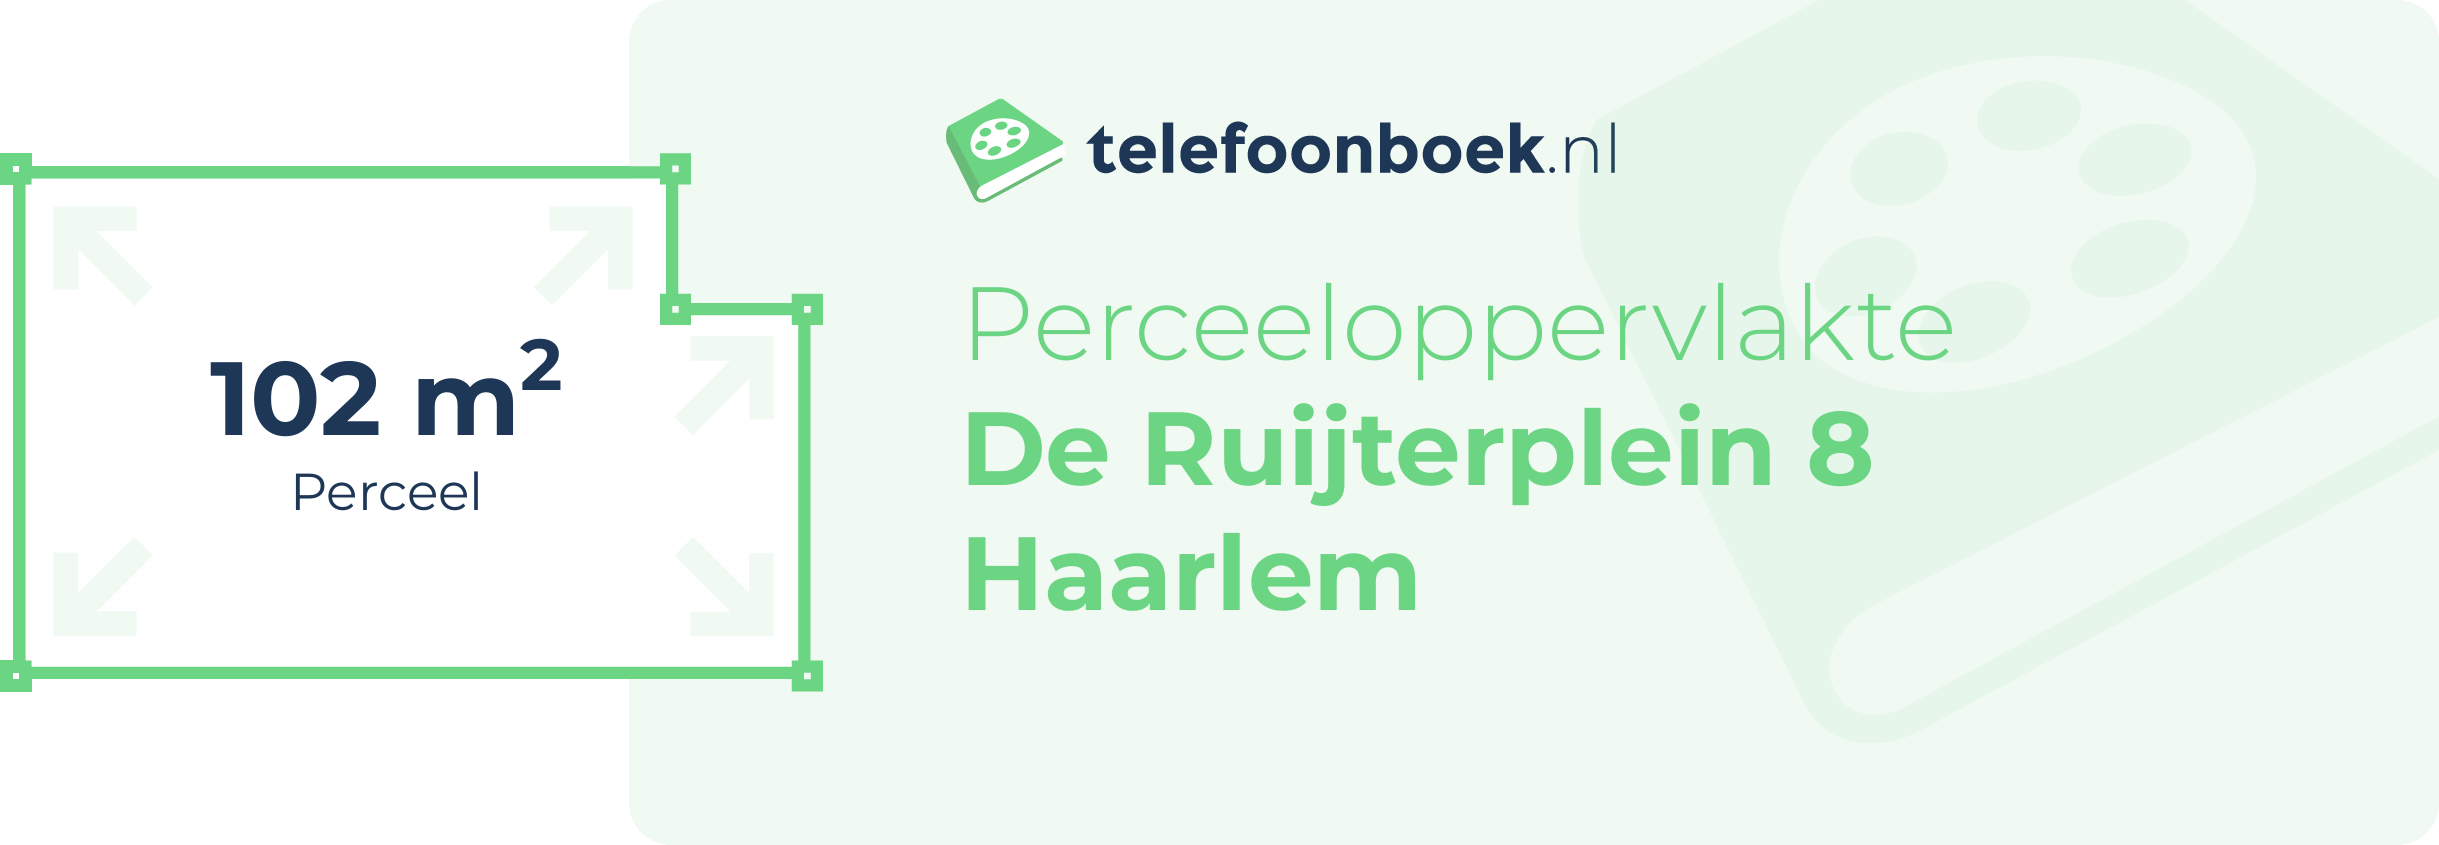 Perceeloppervlakte De Ruijterplein 8 Haarlem